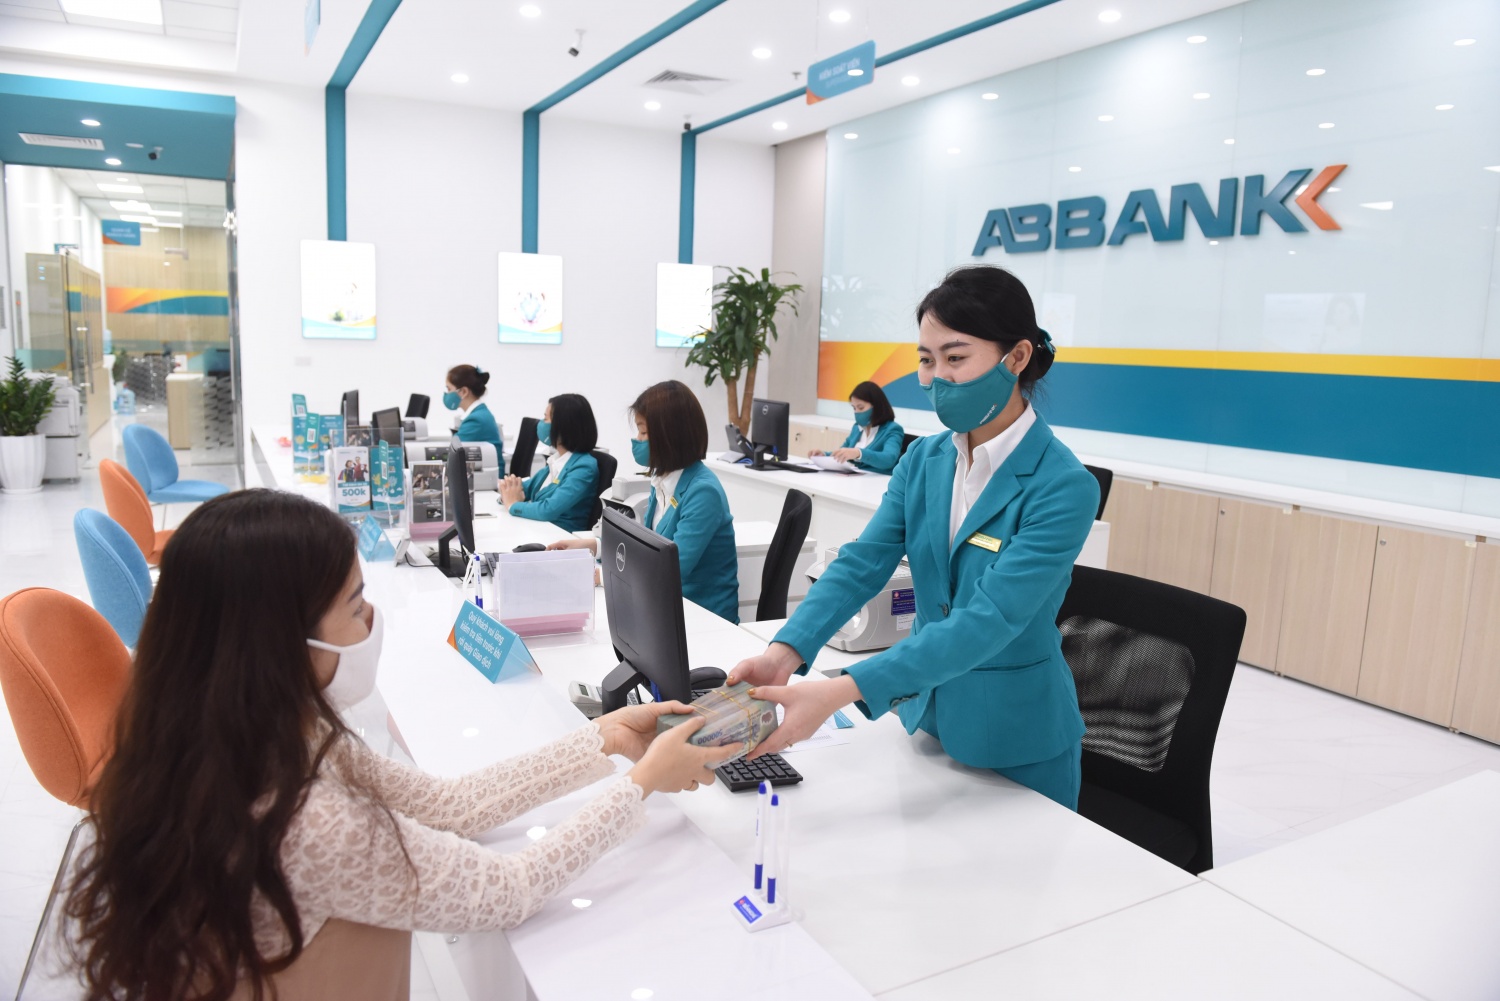 Tin ngân hàng tuần qua: SeABank bổ nhiệm loạt nhân sự cấp cao